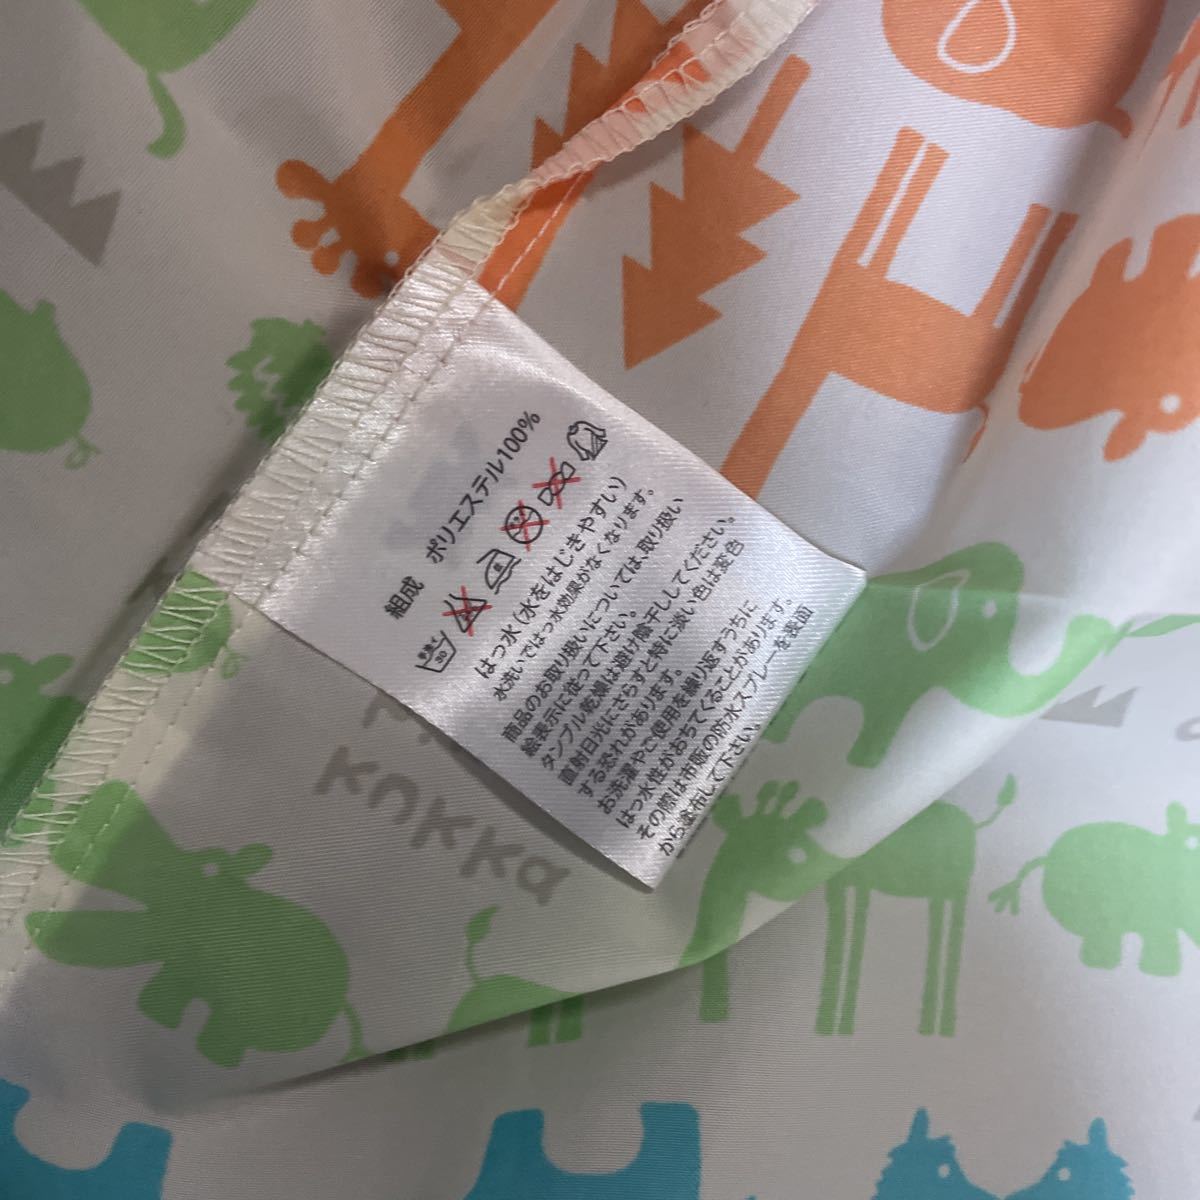  Ogawa (Ogawa) Kids плащ 110cm [2023 год ] животное отражающий лента есть бегемот san type рюкзак модель упаковочный пакет есть включая доставку Kappa 